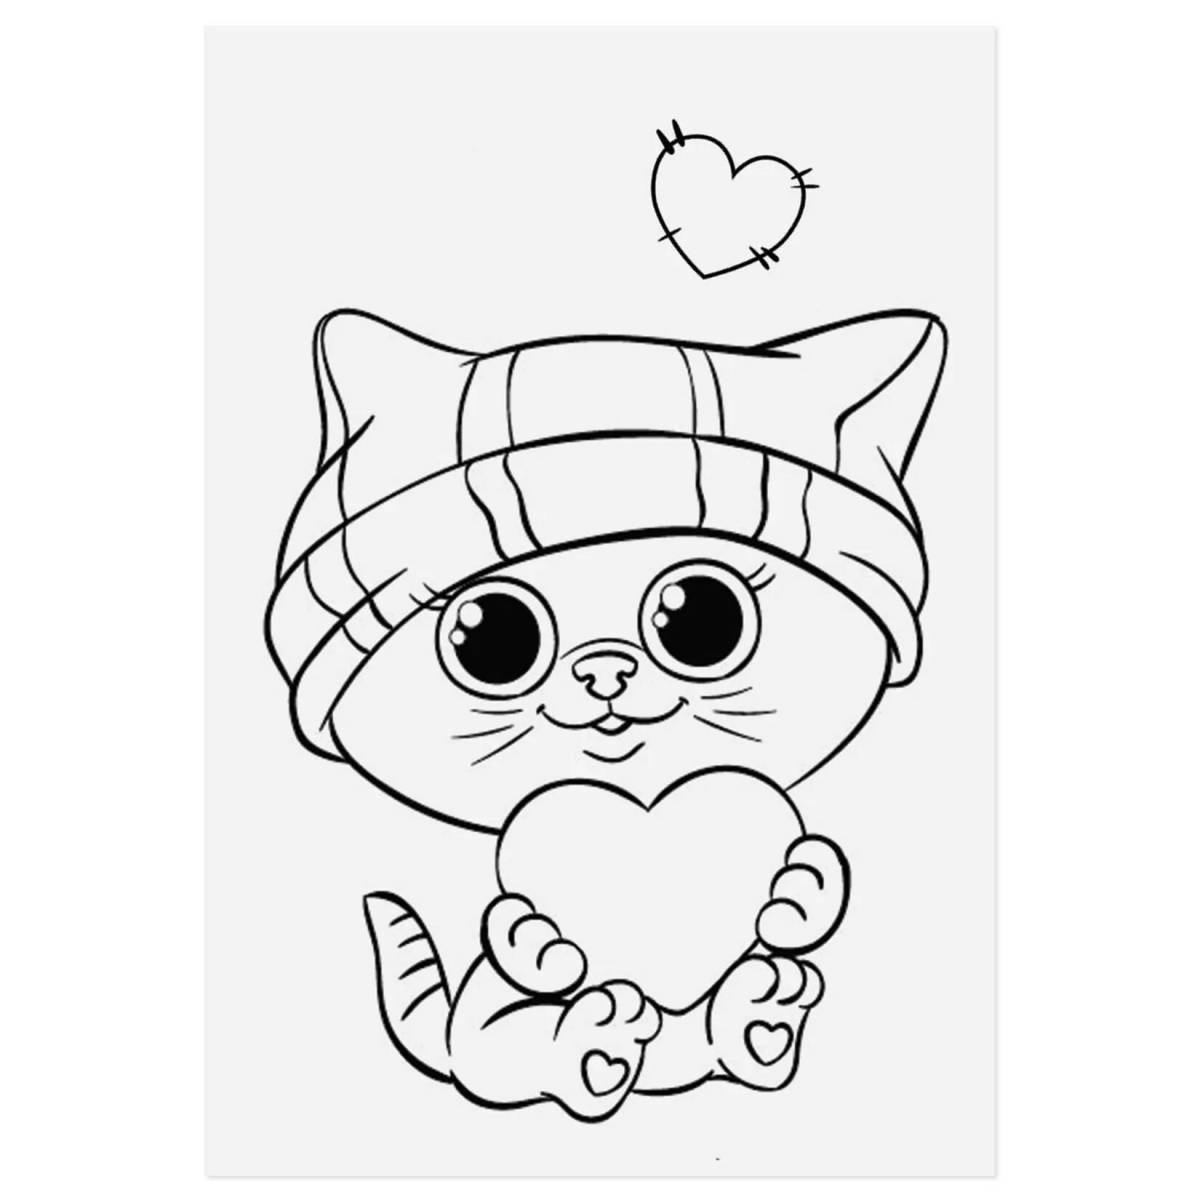 Sweet cute cat drawing